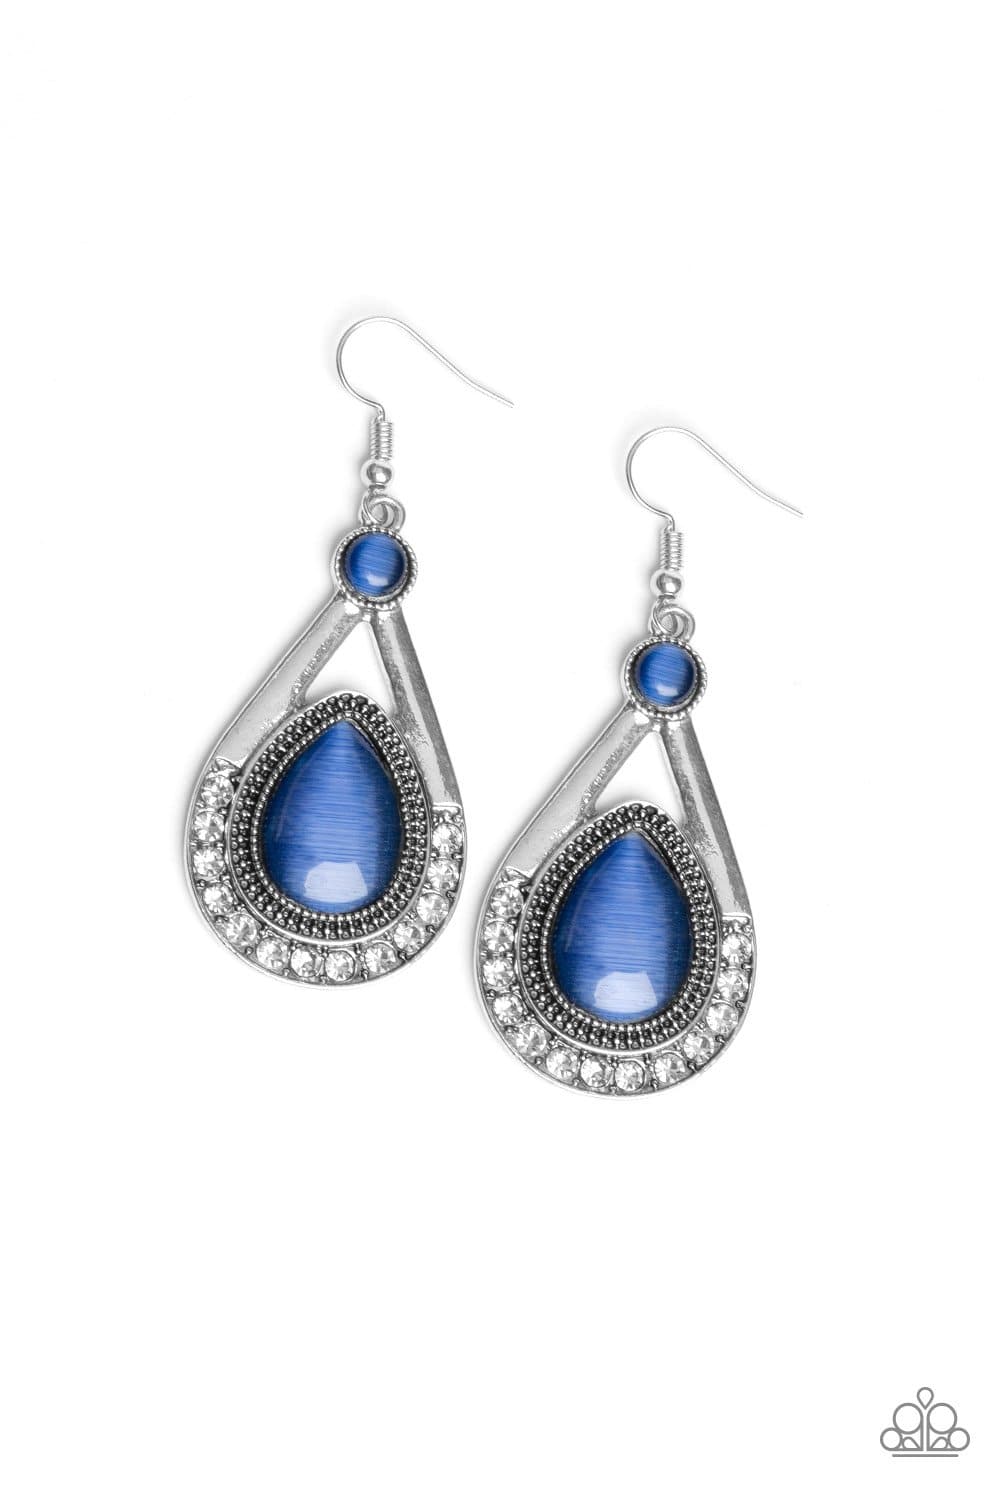 Pro Glow - Blue Cat's Eye Earrings - Paparazzi Accessories - GlaMarous Titi Jewels